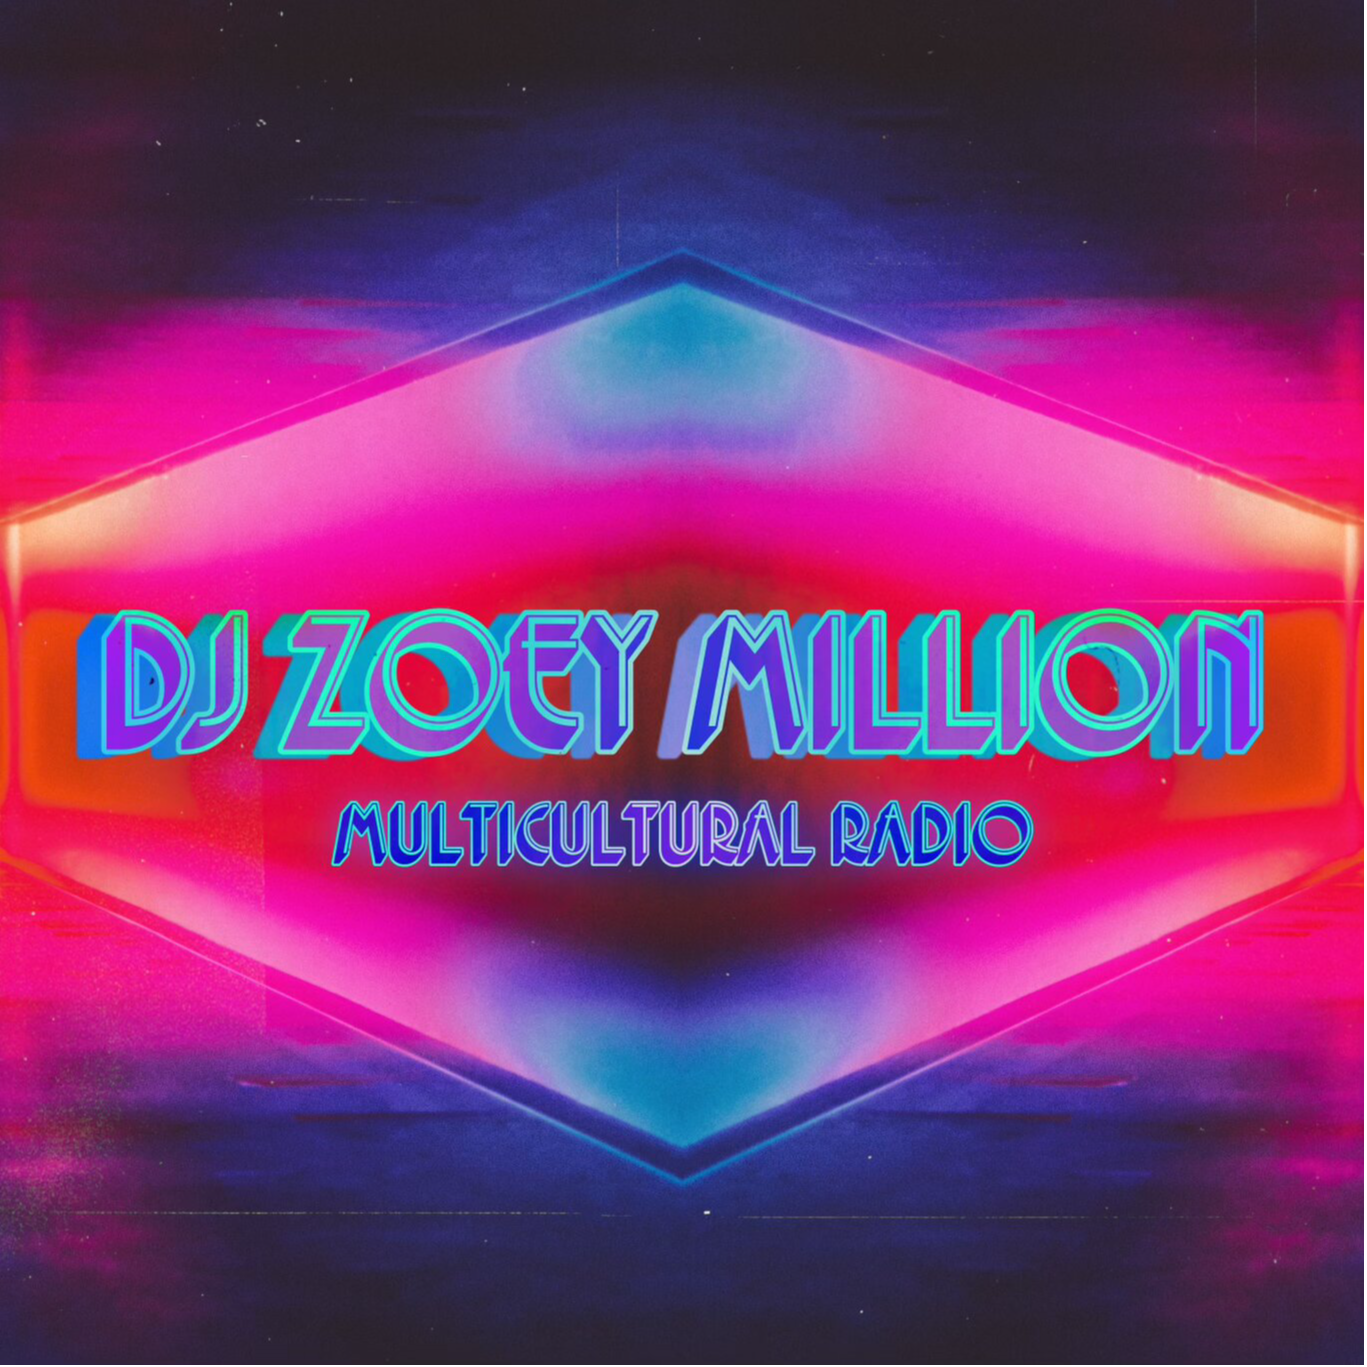 DJ ZOEY MILLION